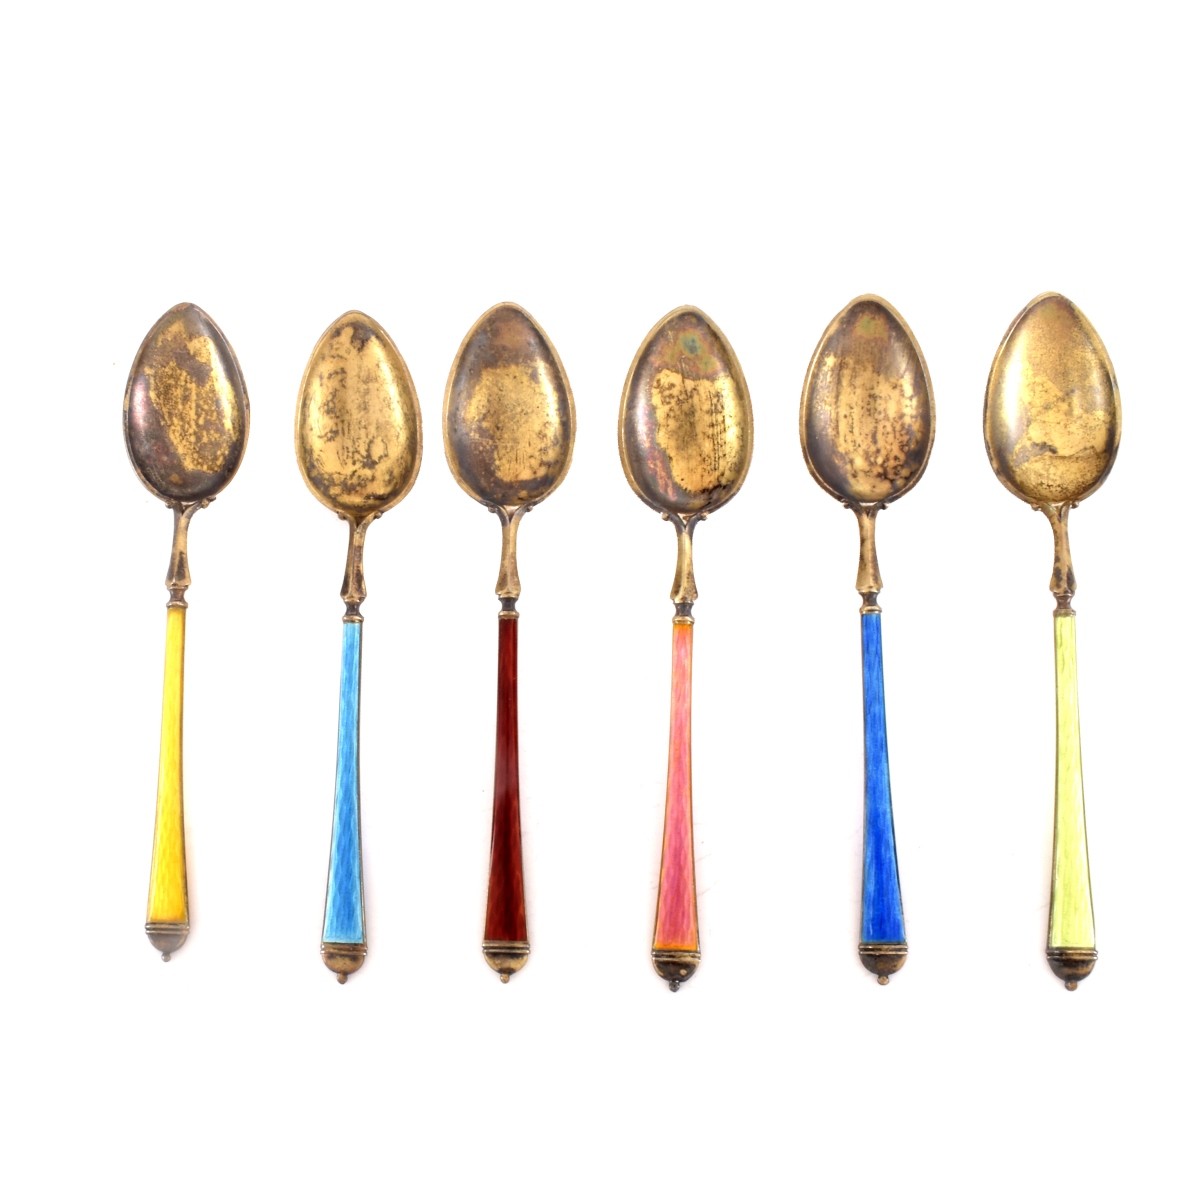 Enamel Sterling Demitasse Spoons